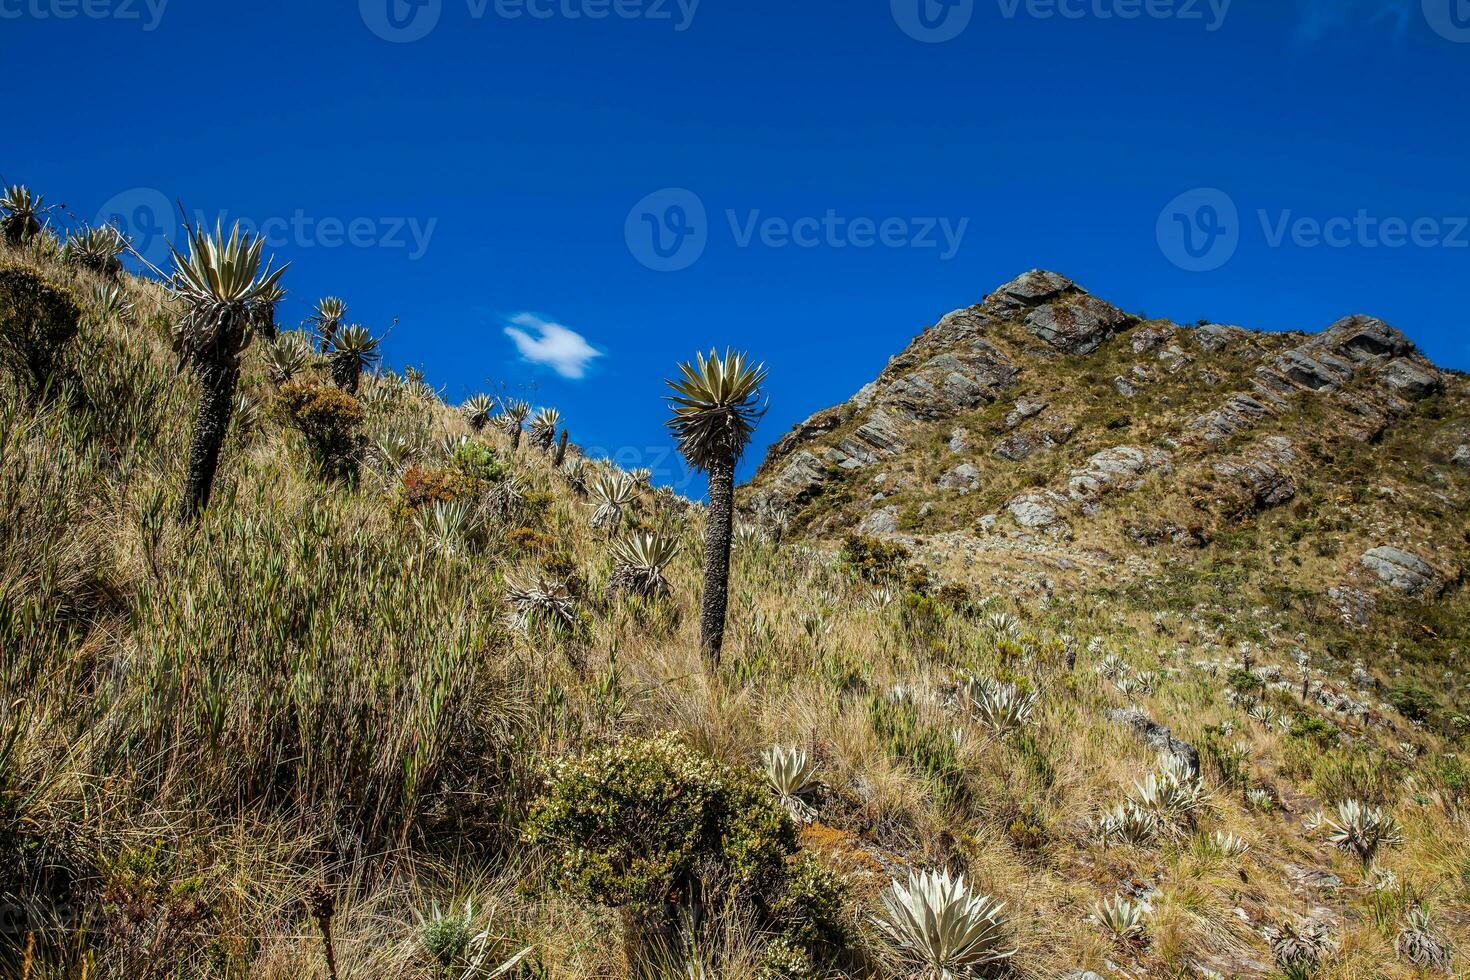 mooi landschap van Colombiaanse andean bergen tonen paramo type vegetatie in de afdeling van cundinamarca foto